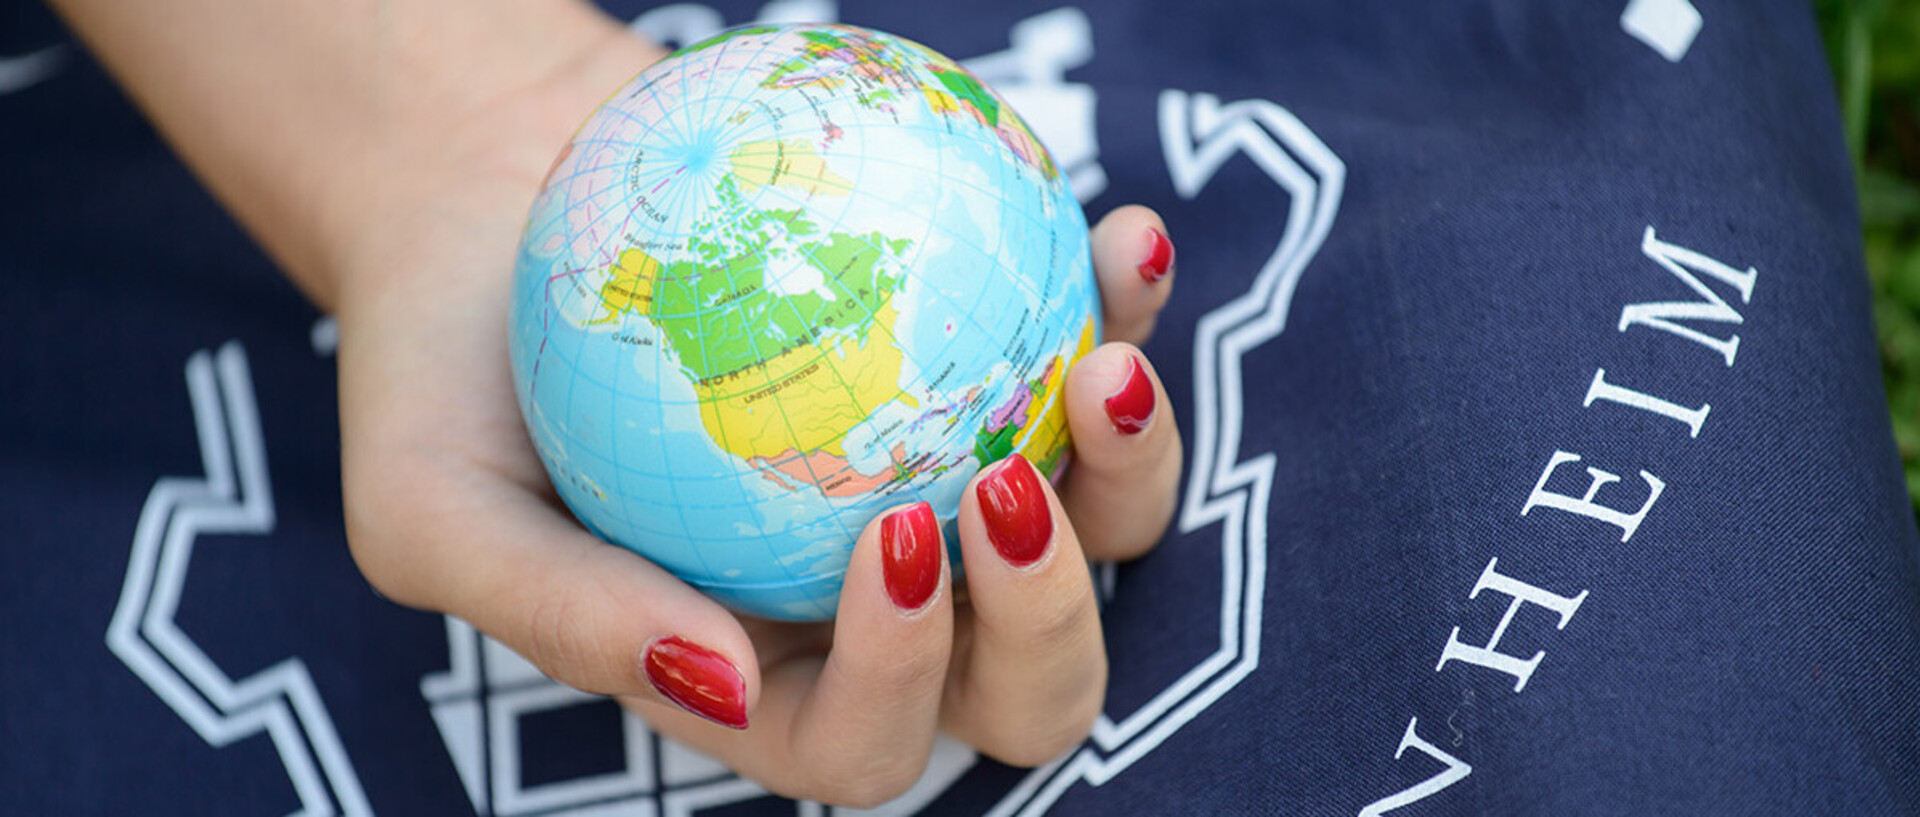 Eine Hand mit rot lackierten Fingernägeln hält einen Globus